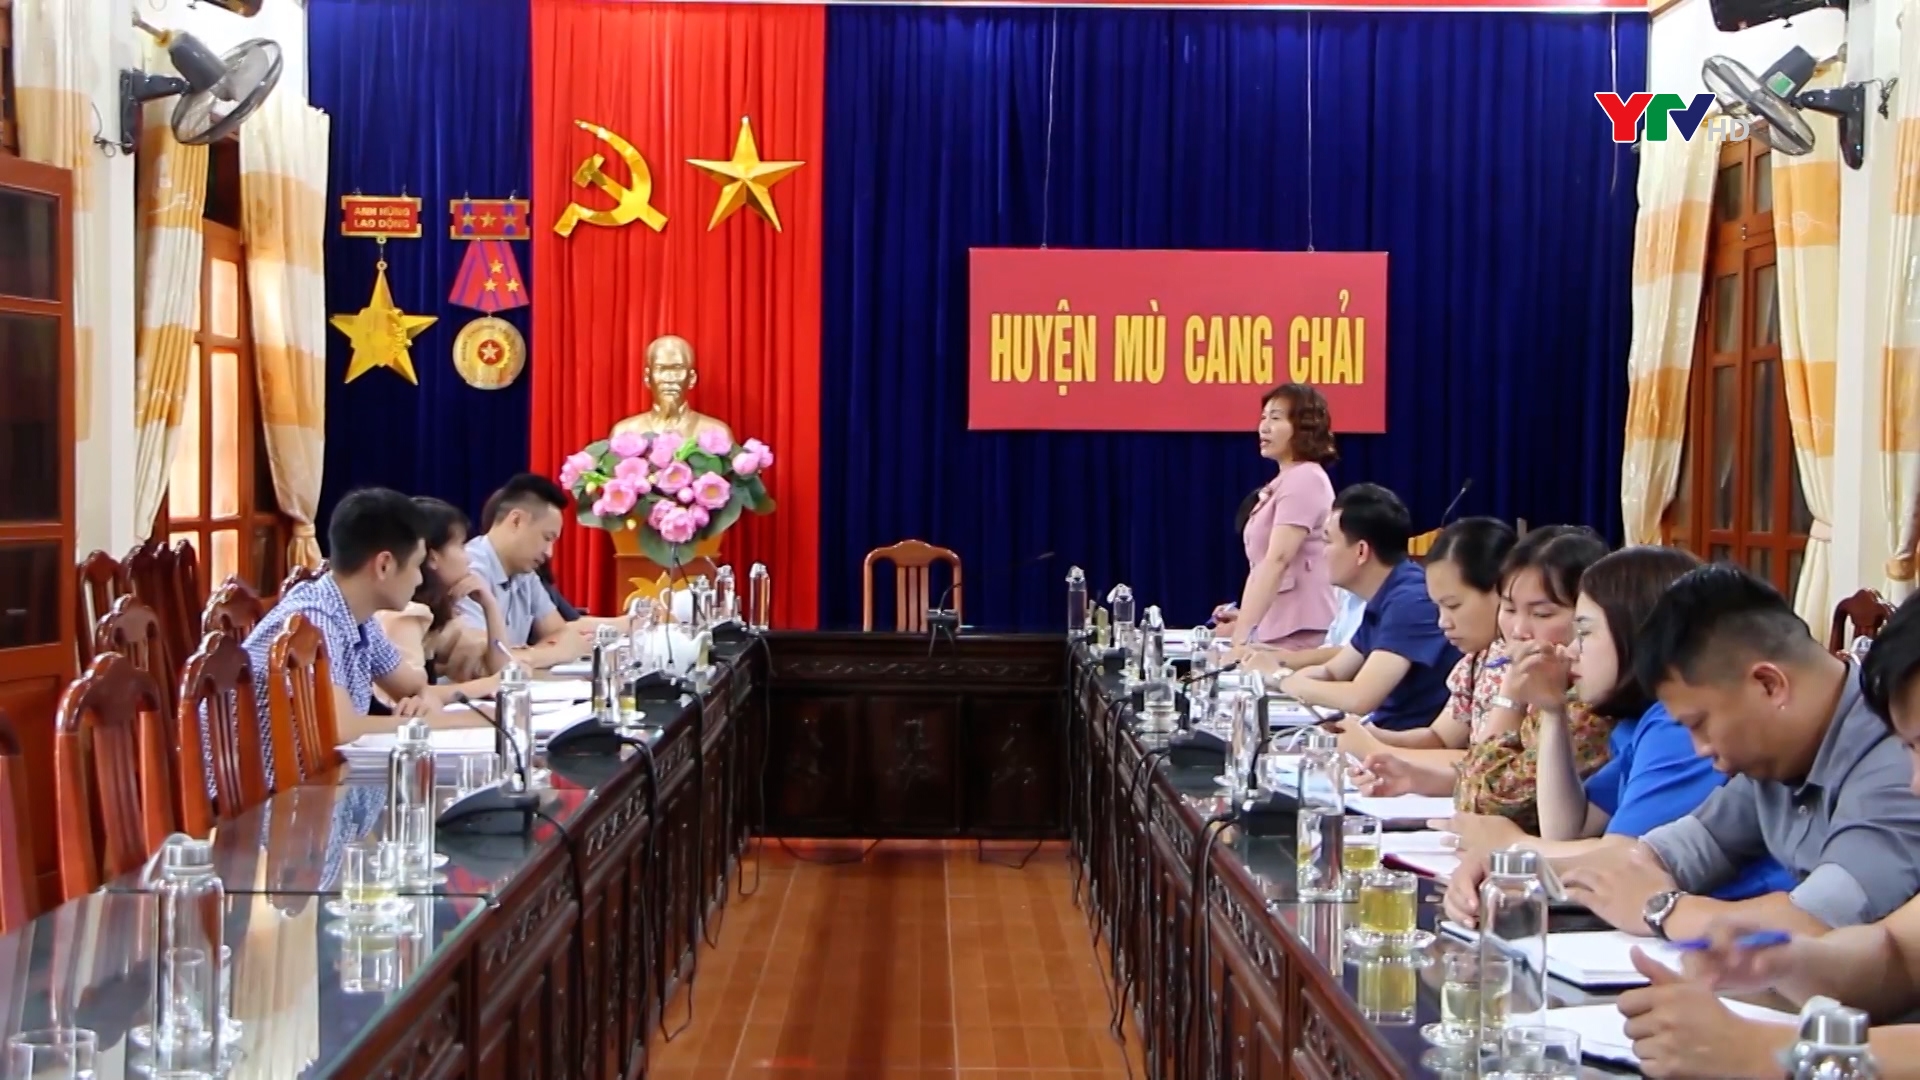 Đoàn công tác của HĐND tỉnh Yên Bái giám sát tại huyện Mù Cang Chải